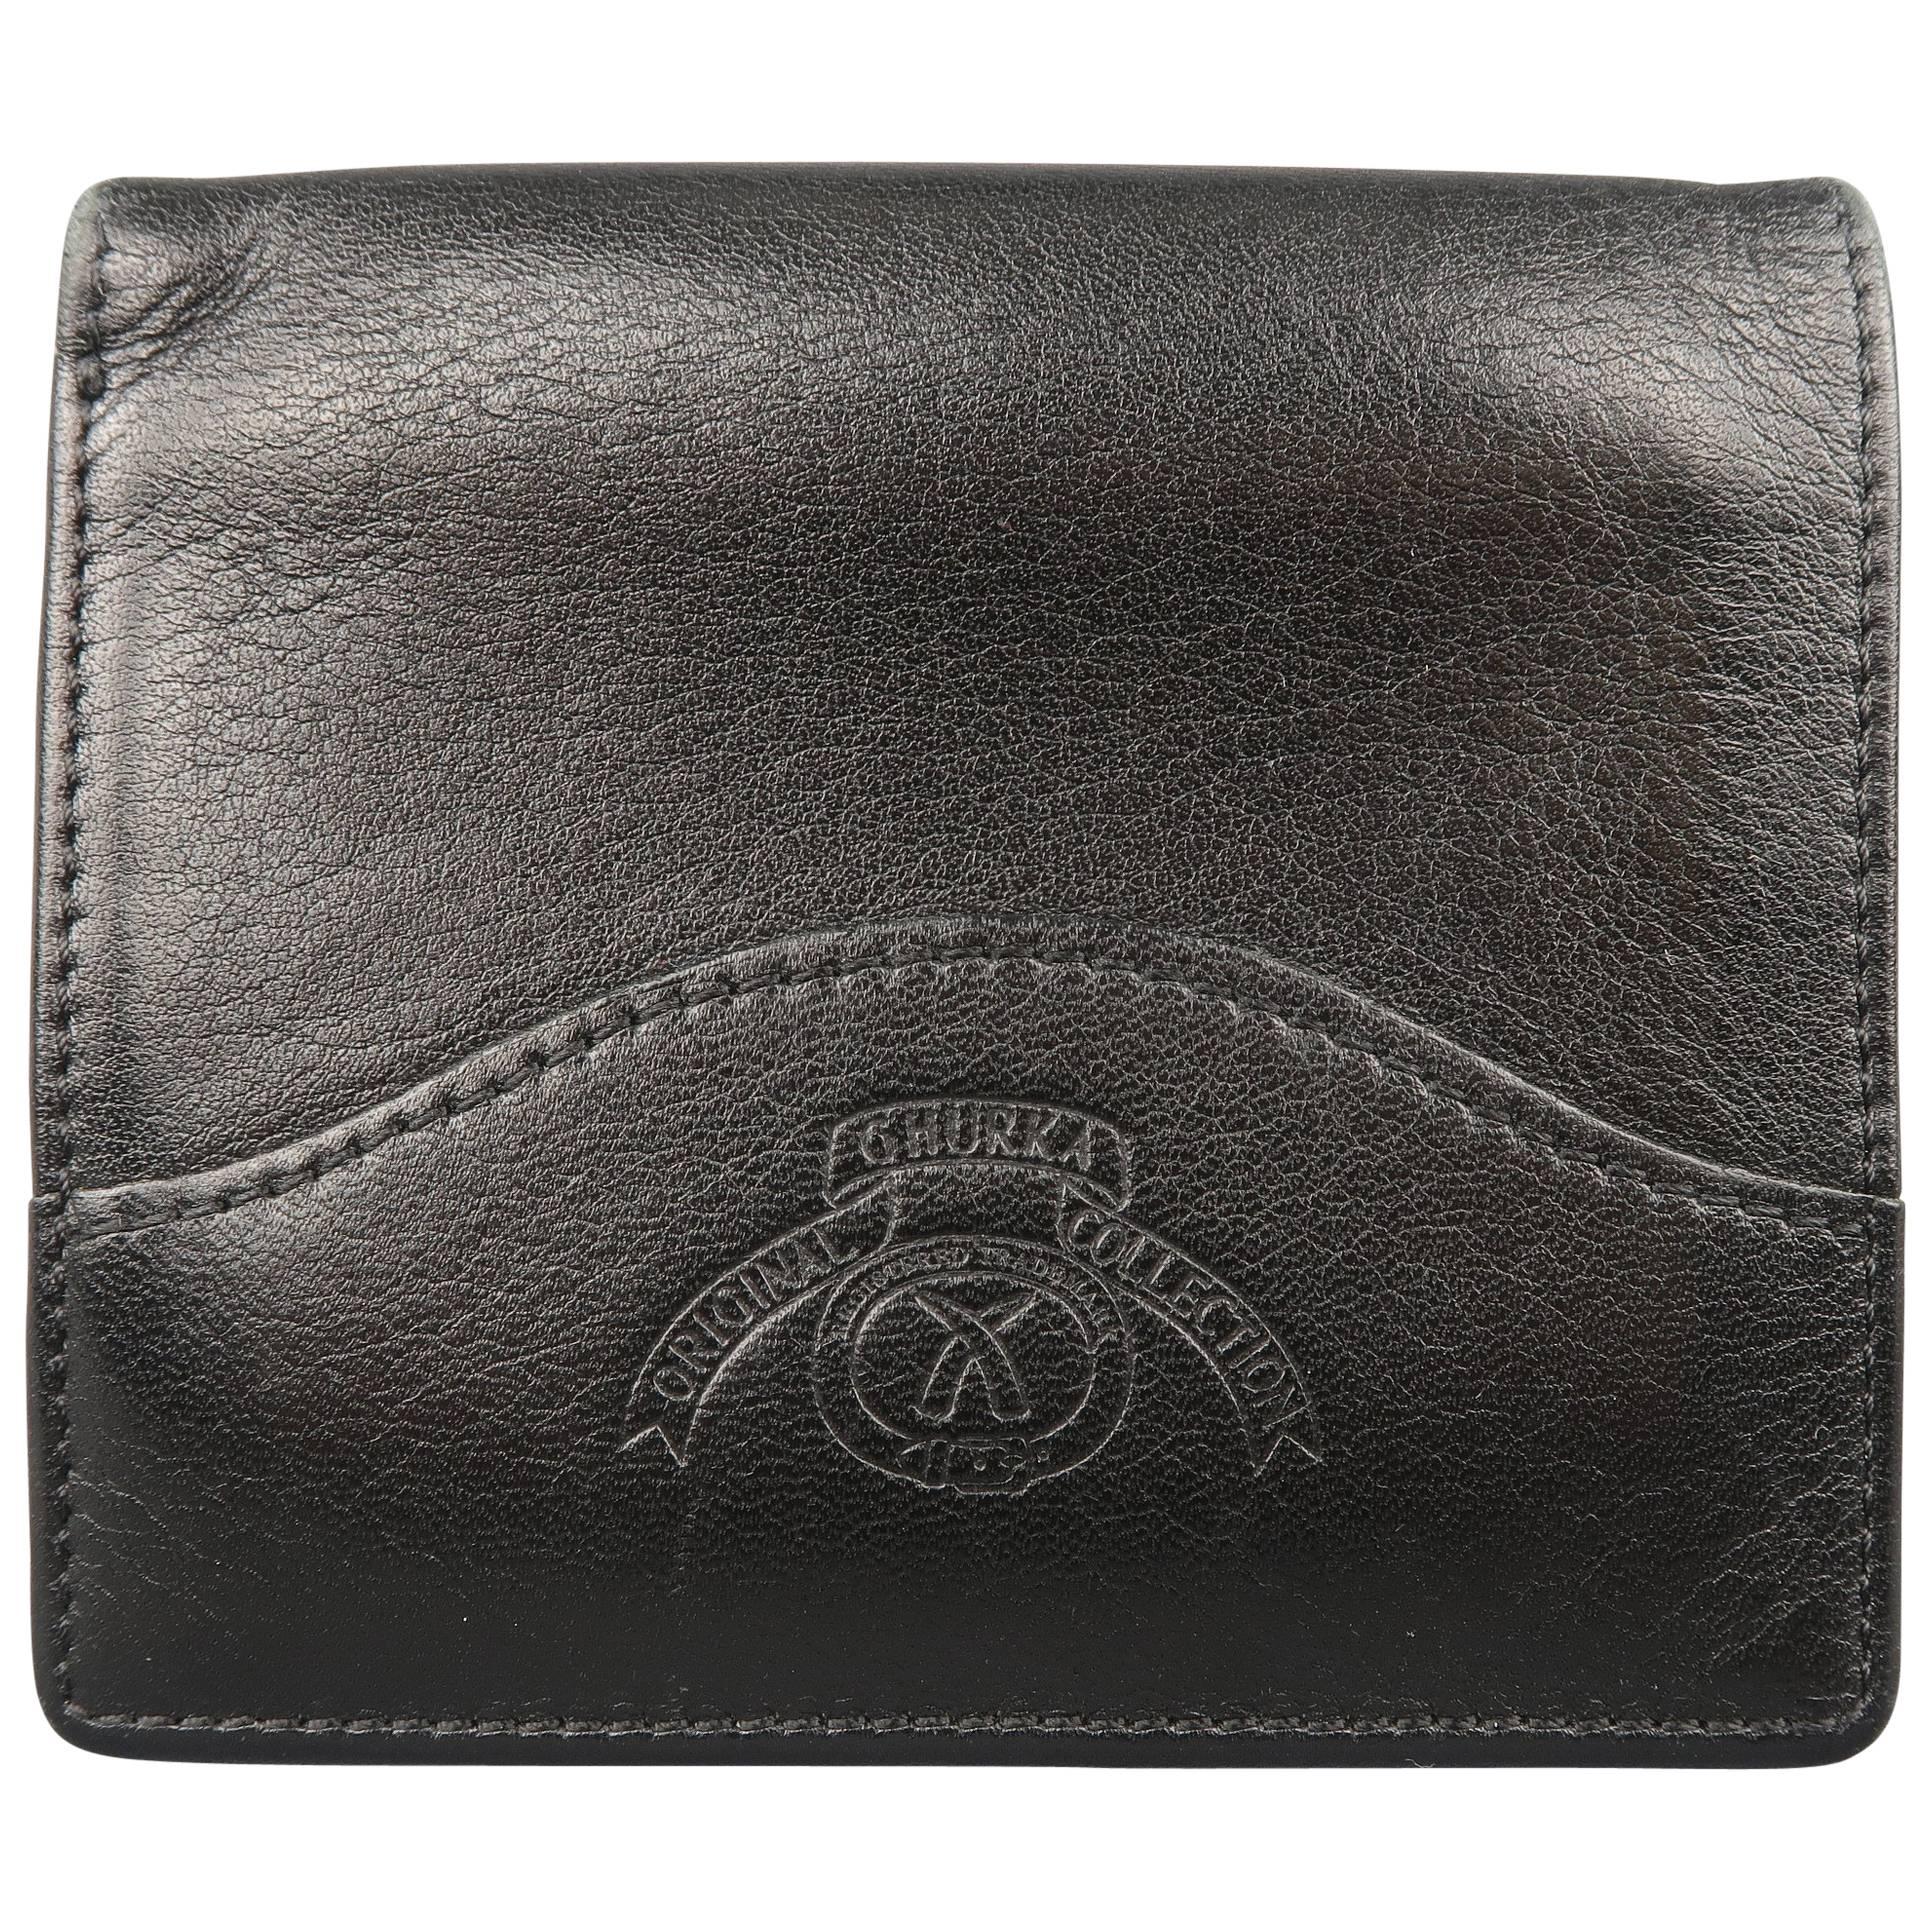 Ghurka Men's Black Logo Embossed Leather Bifold Wallet